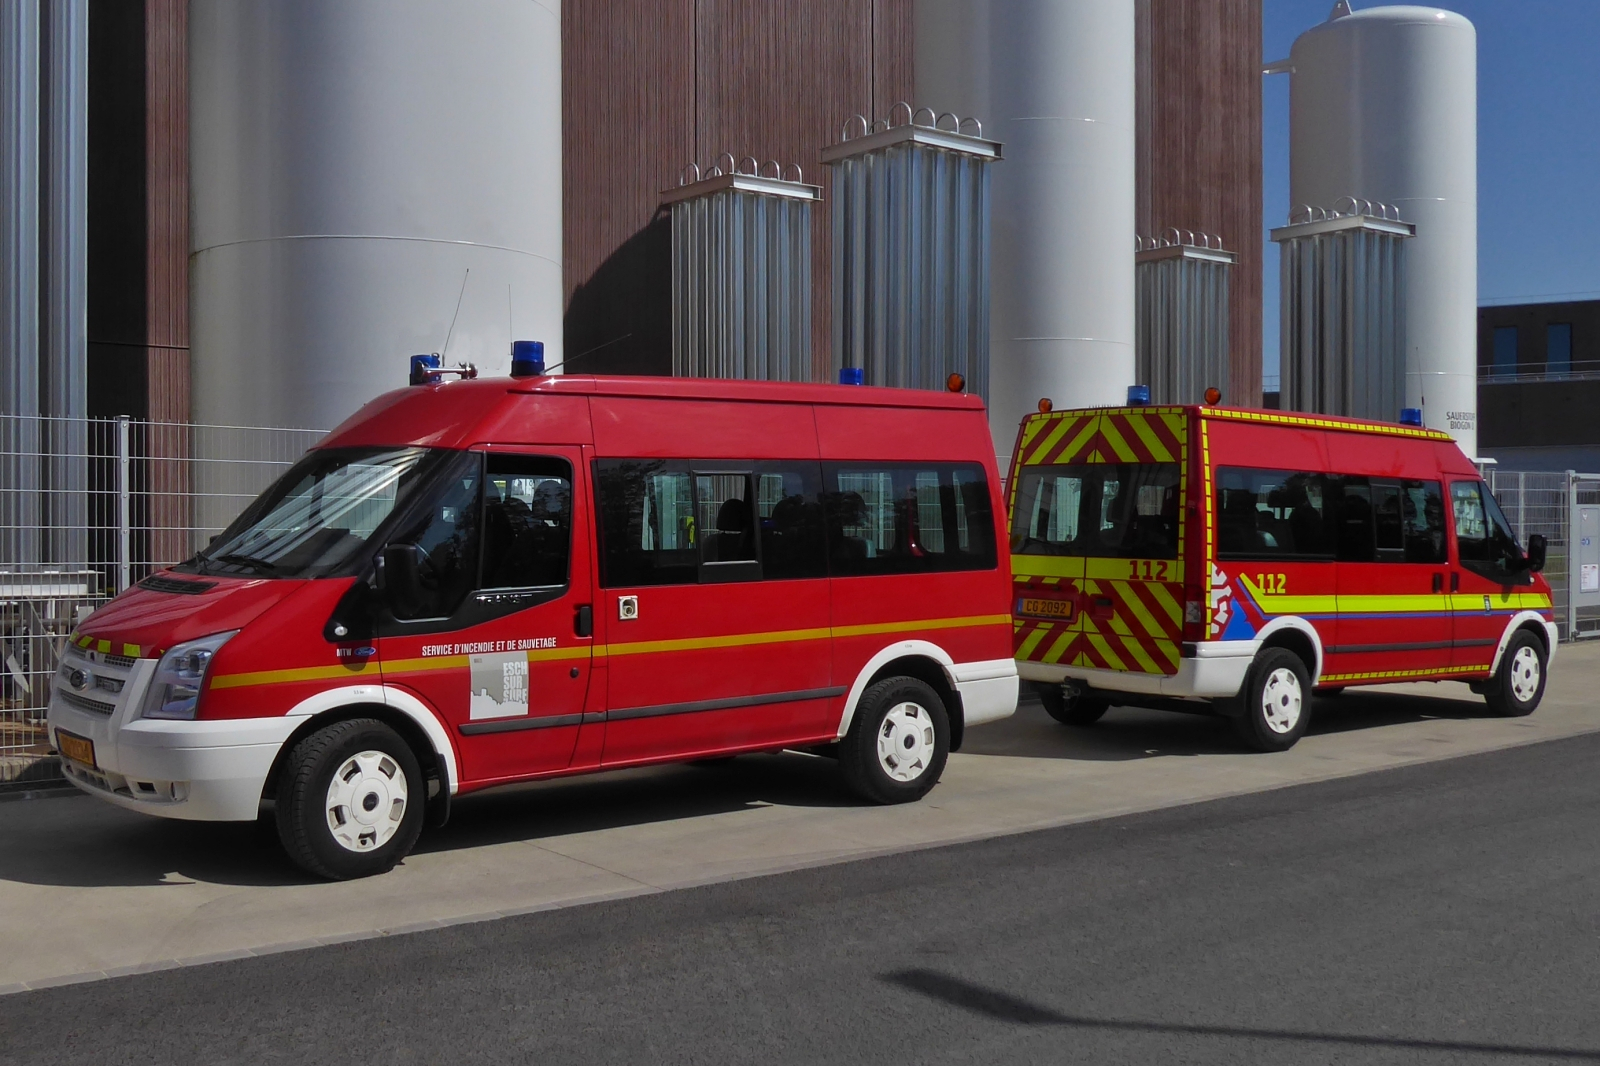 Ford Transit, der Feuerwehr Esch Sauer, wurde am Tag der offenen Tr der Sebbes in Eschdorf im Bild festgehalten. 08.07.2023